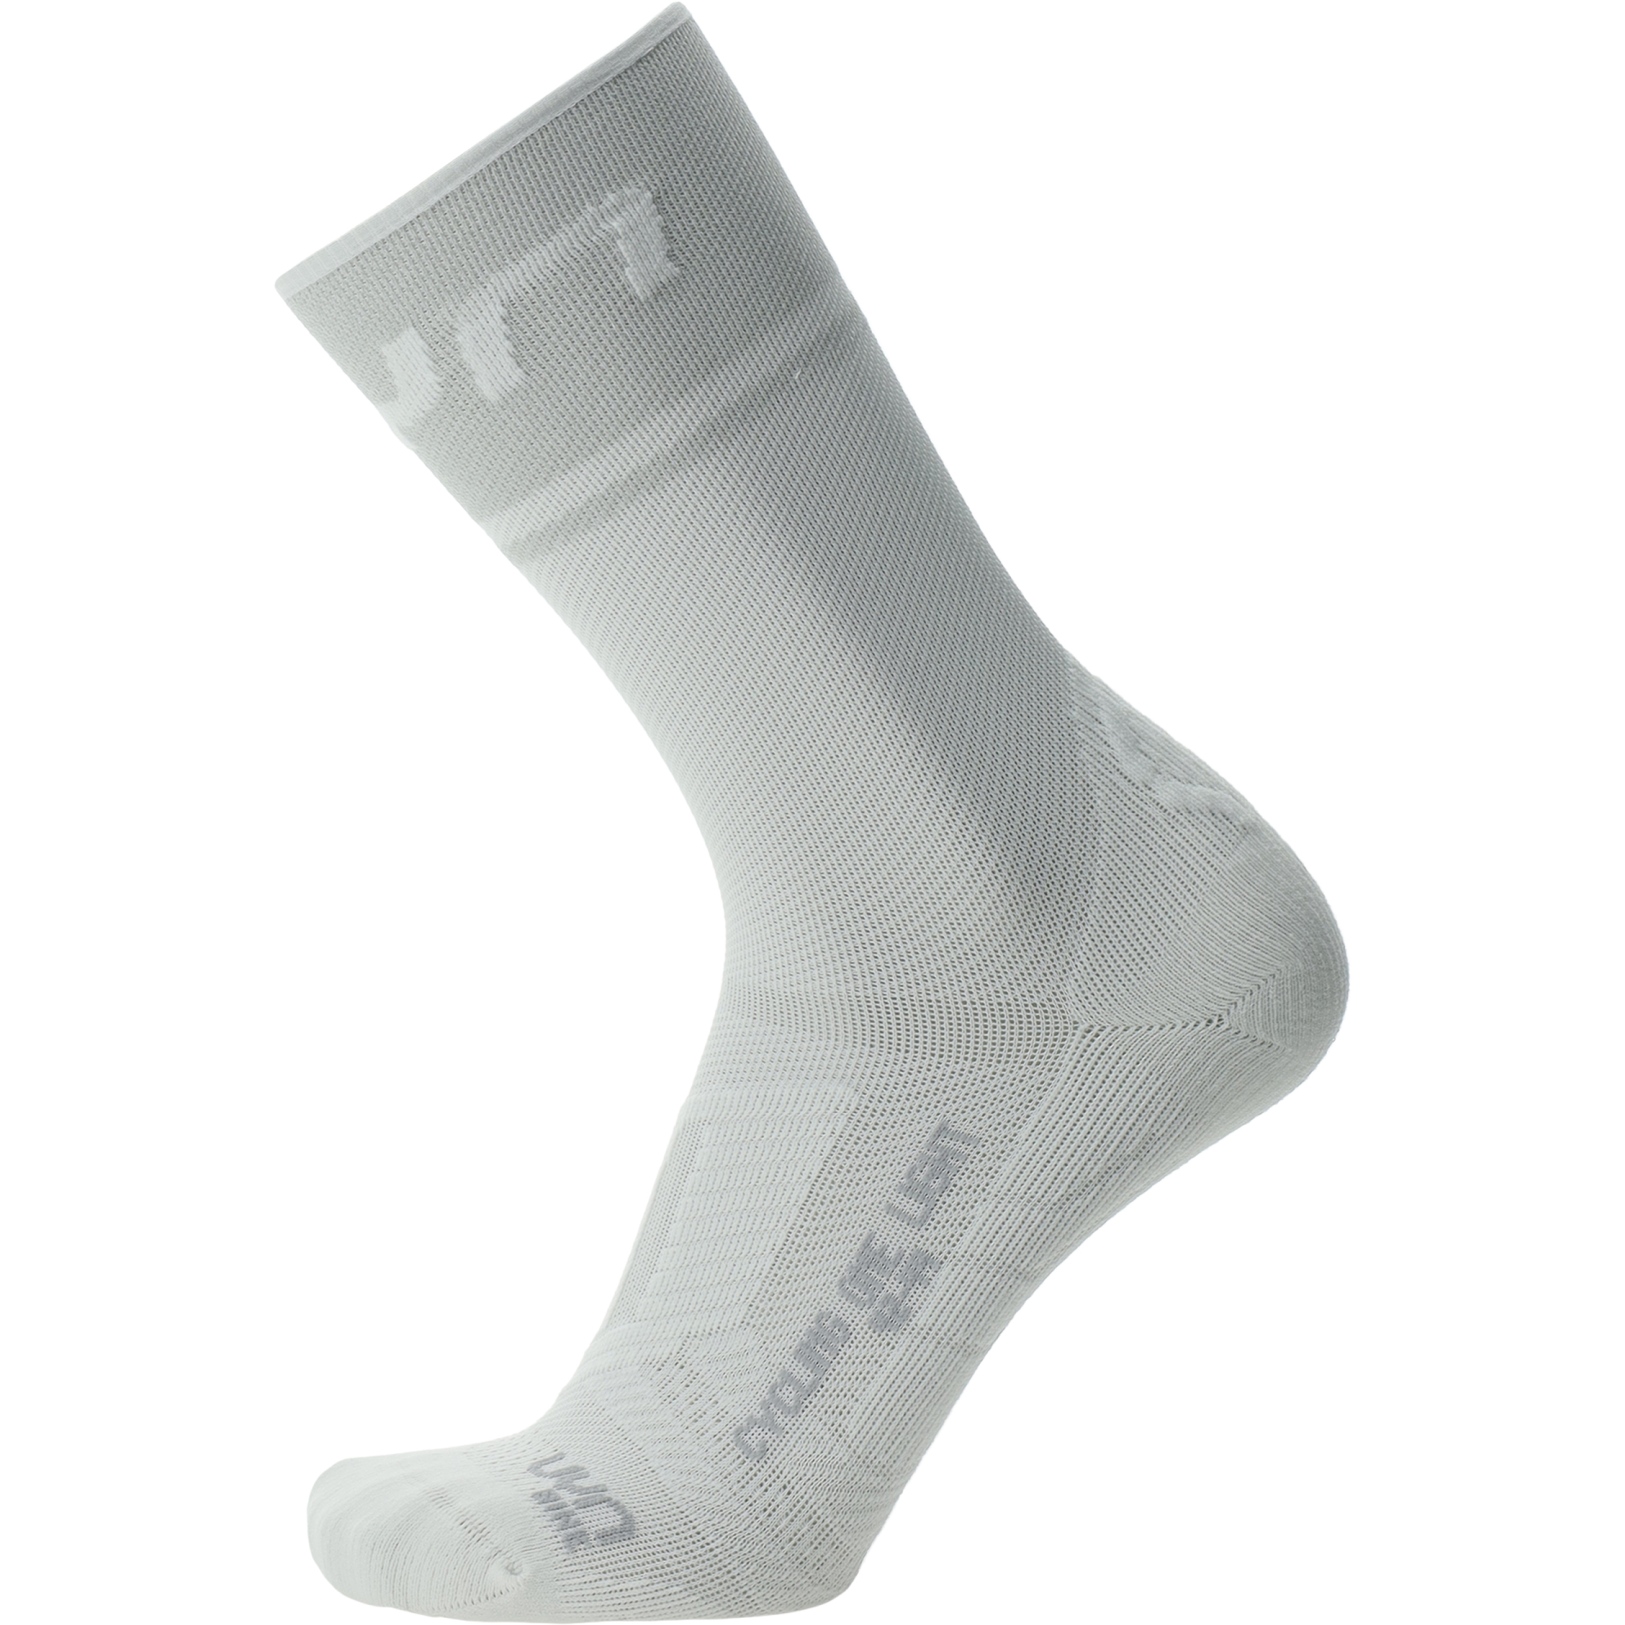 Produktbild von UYN Cycling One Light Socken Damen - Weiß/Silber